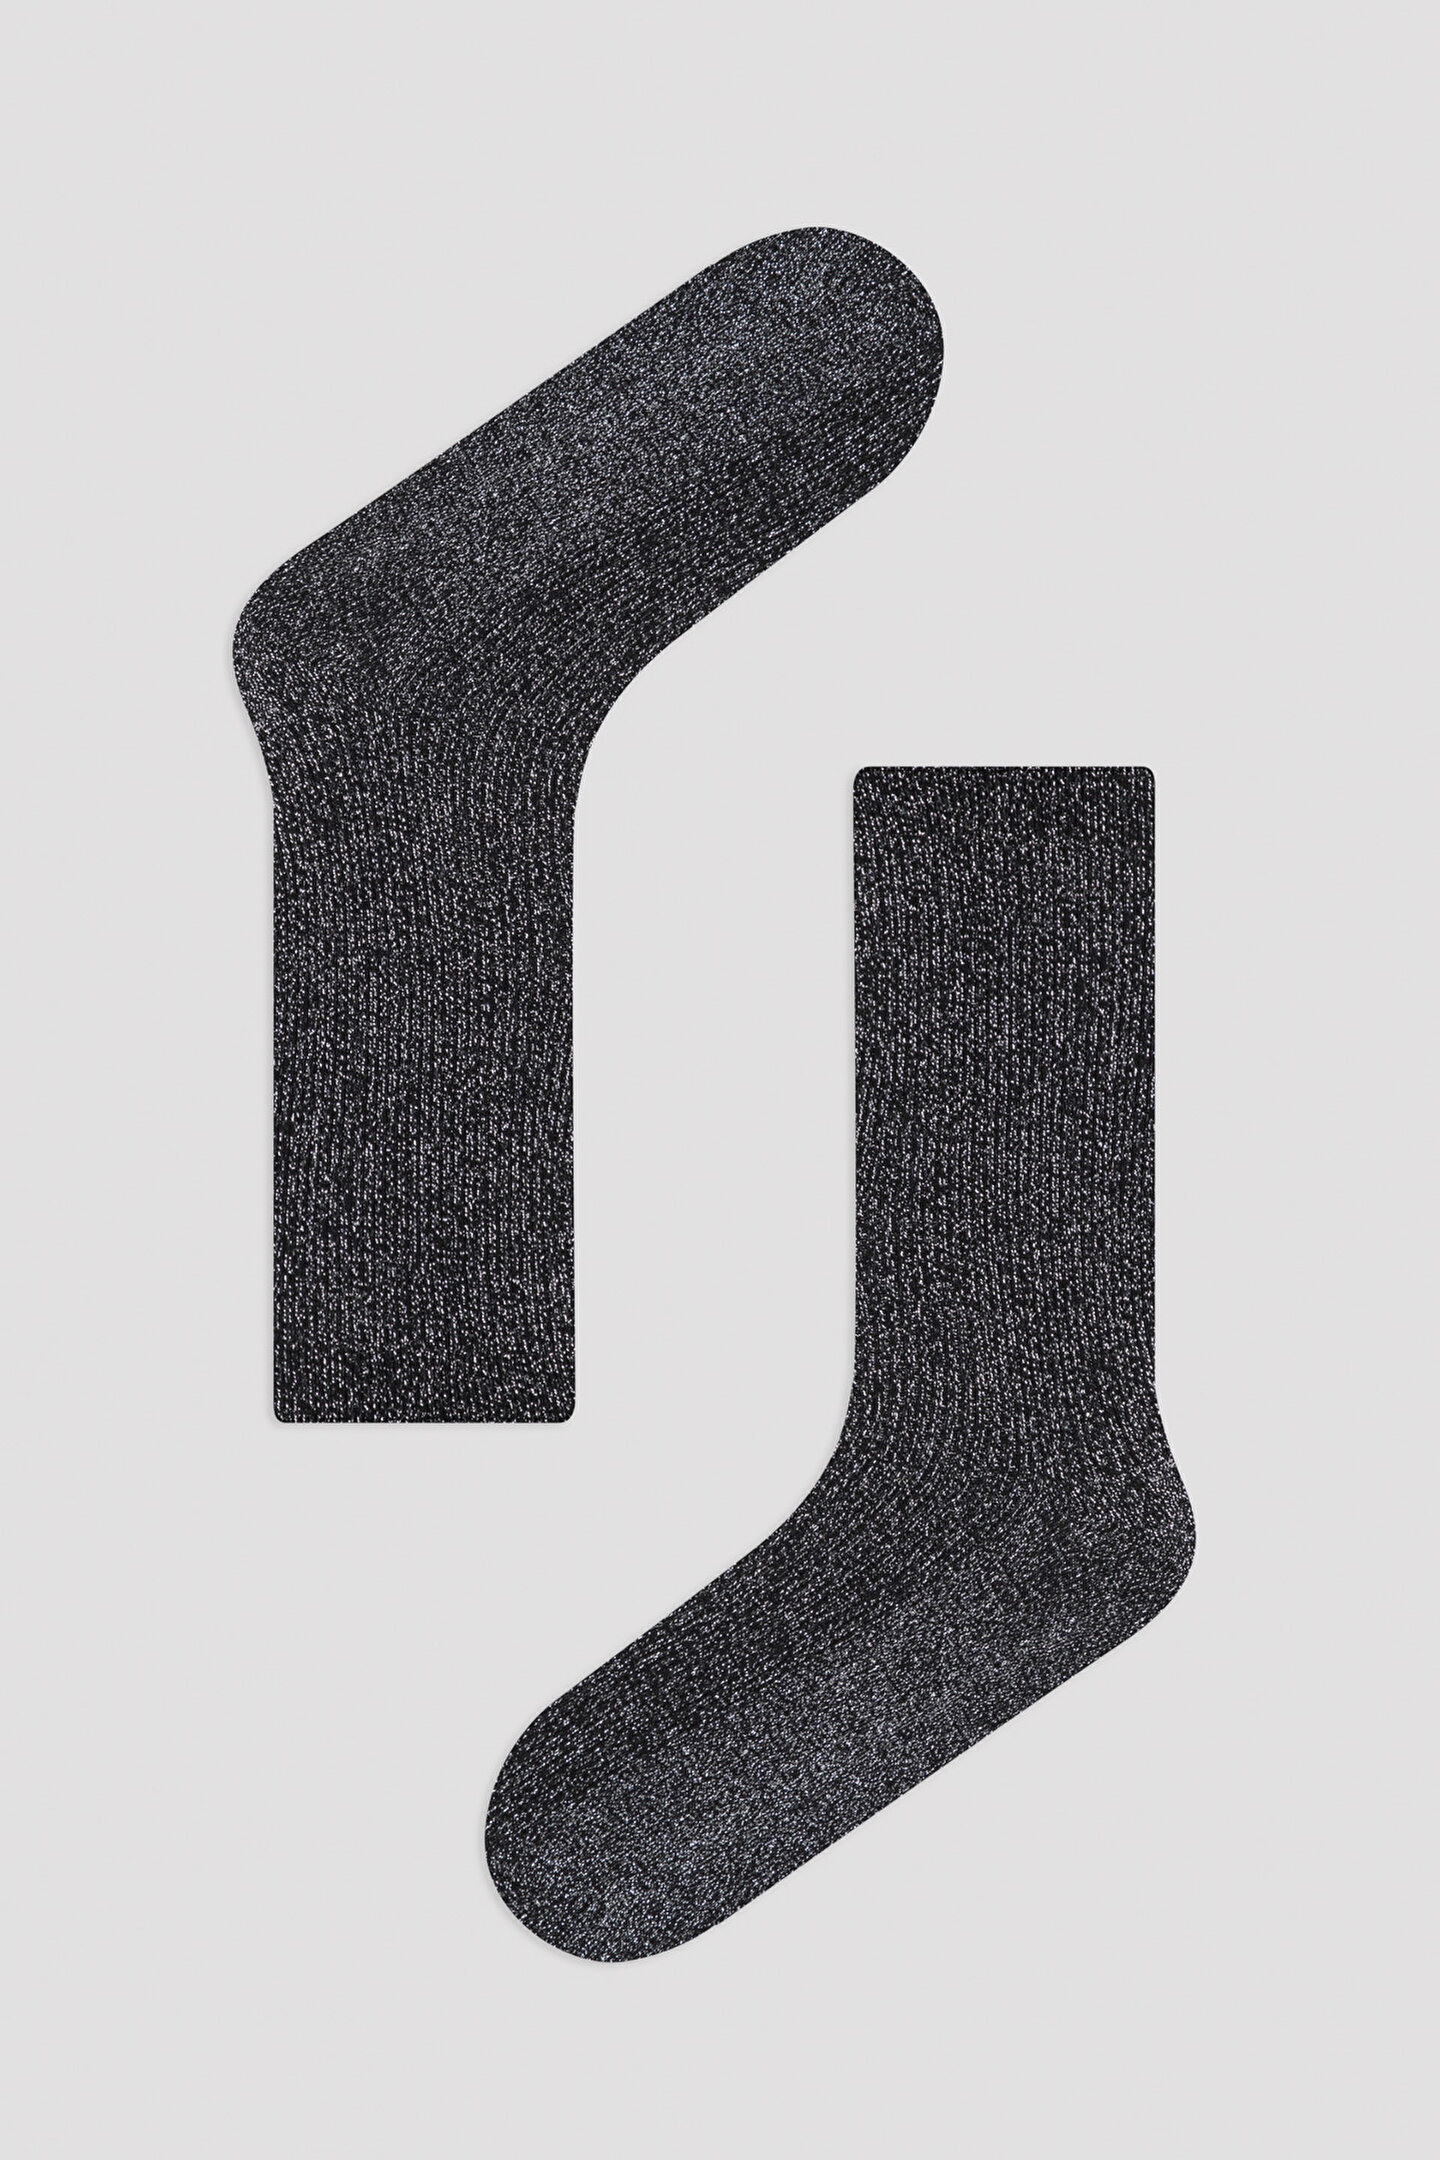 Siyah-Gümüş Soket Çorap - 1